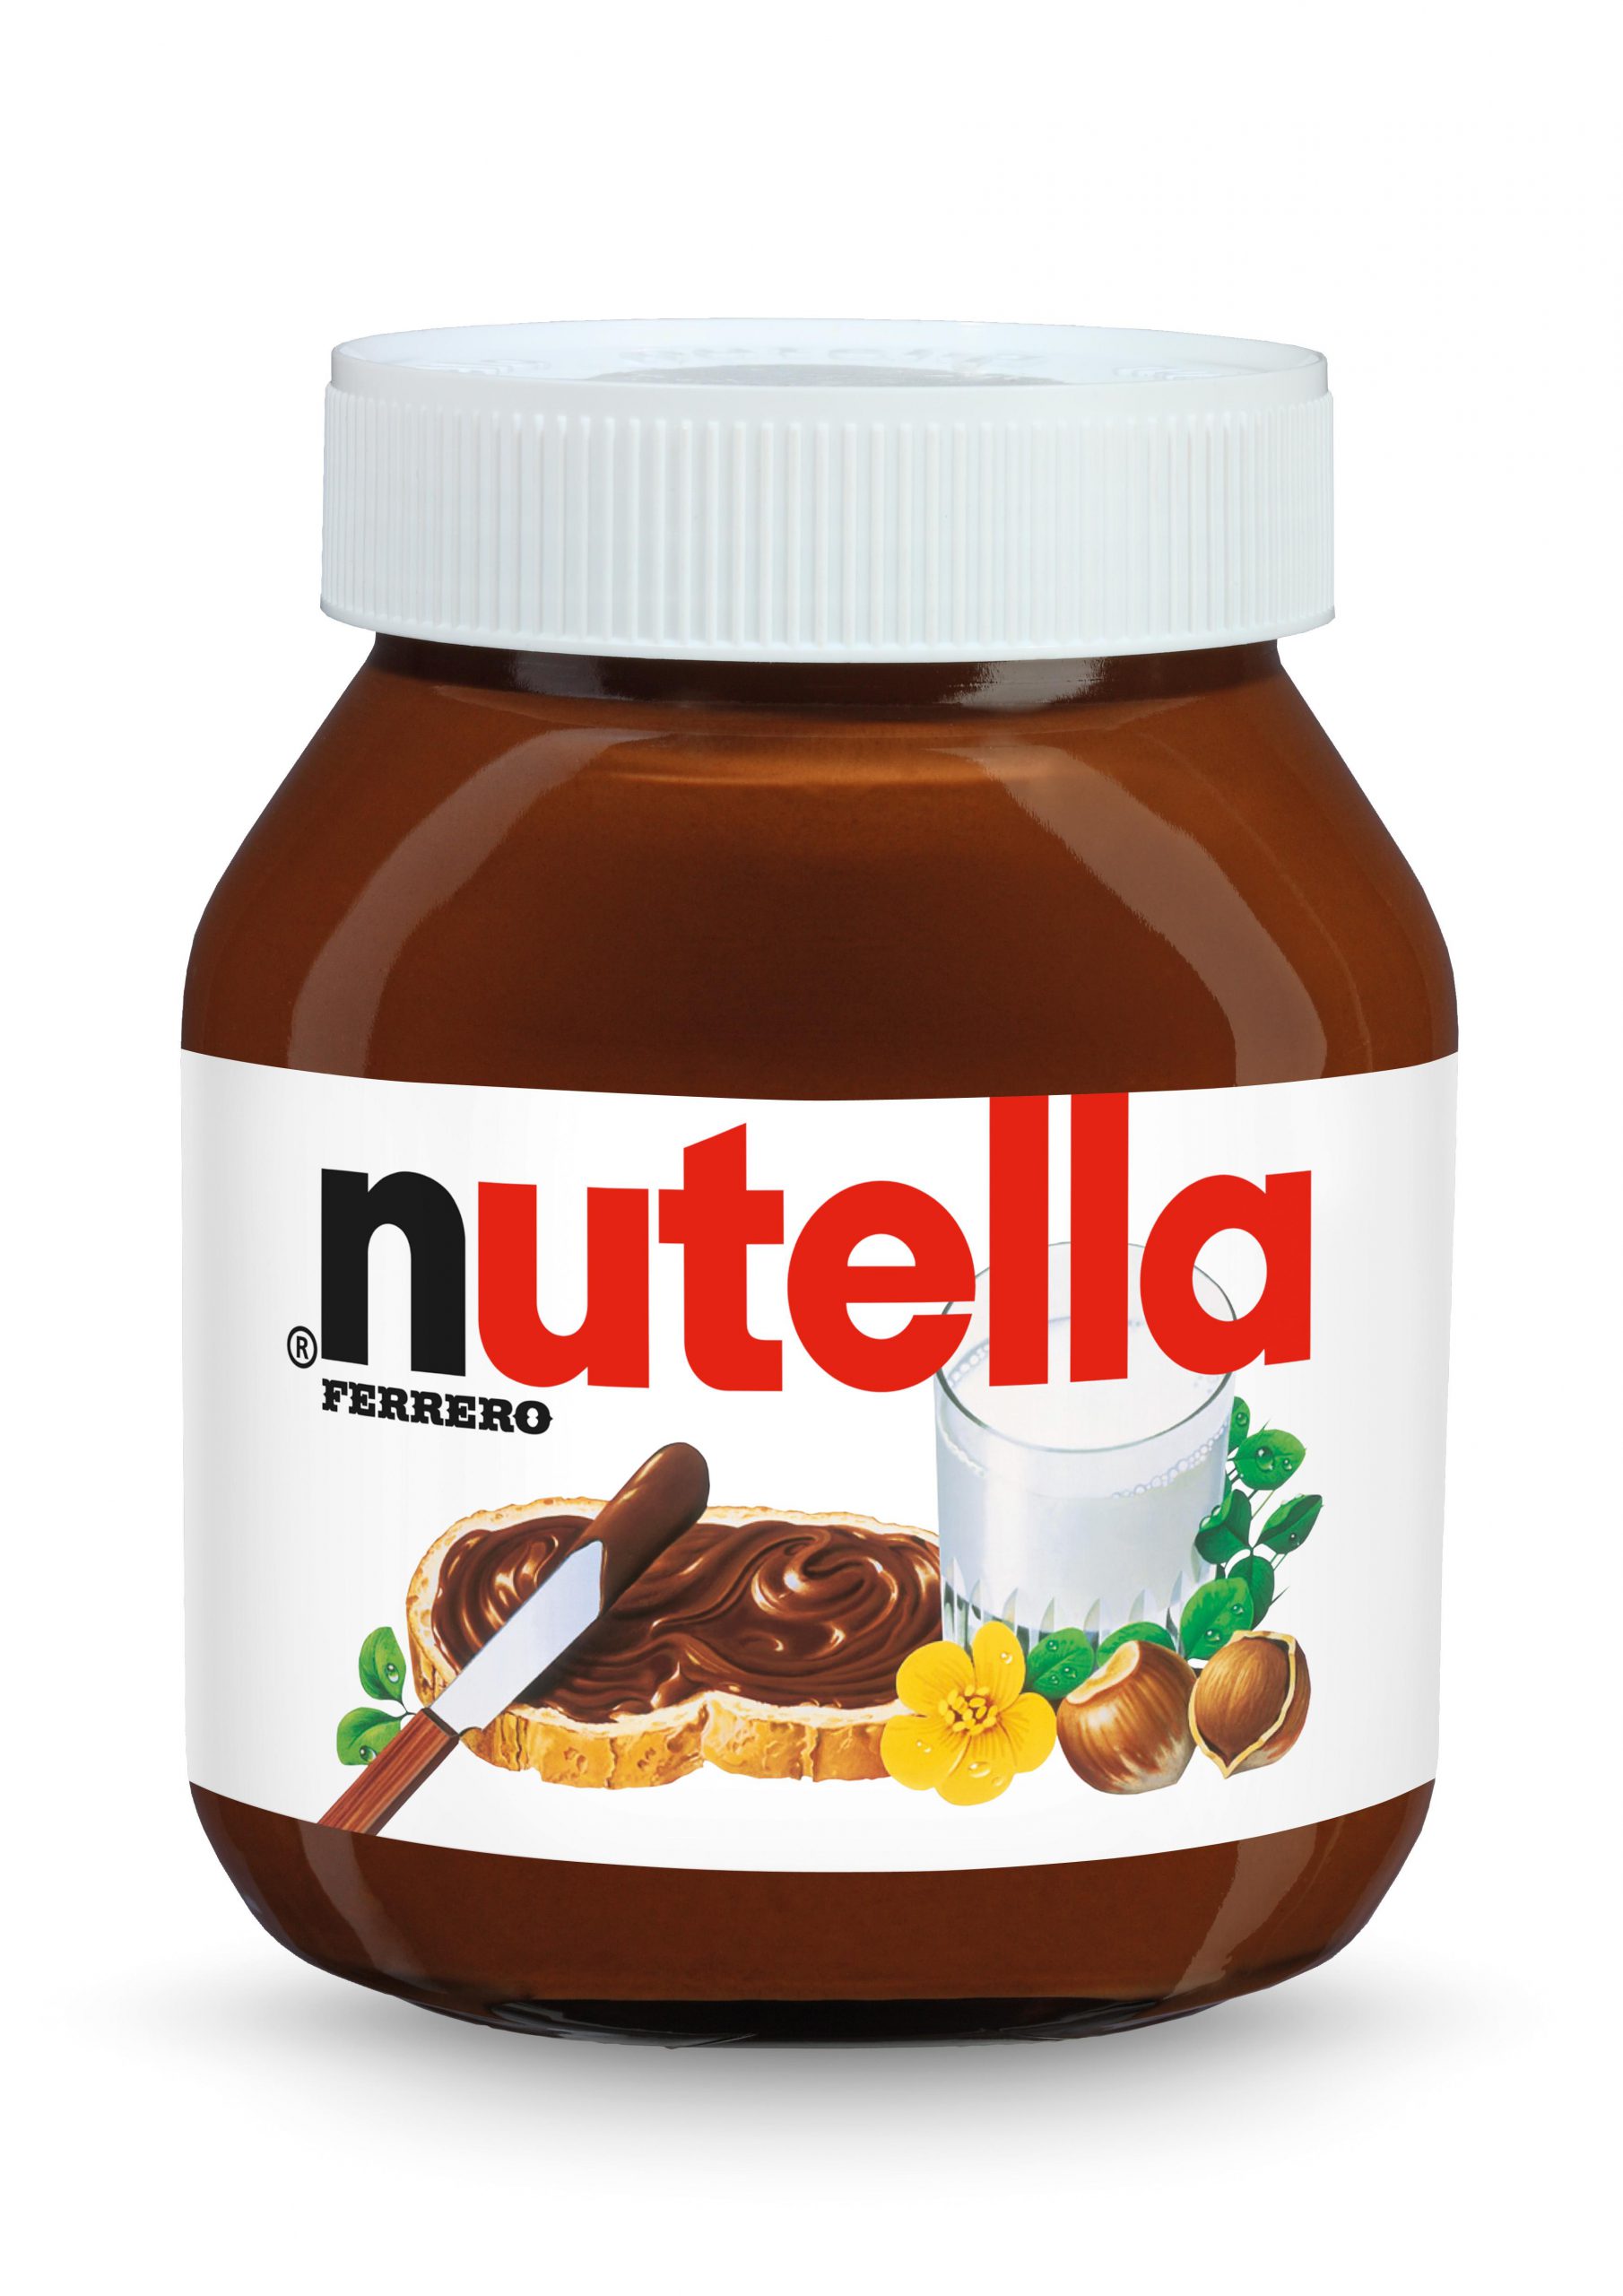 Nutella nie została w żadnym kraju usunięta z półek – oświadczenie.